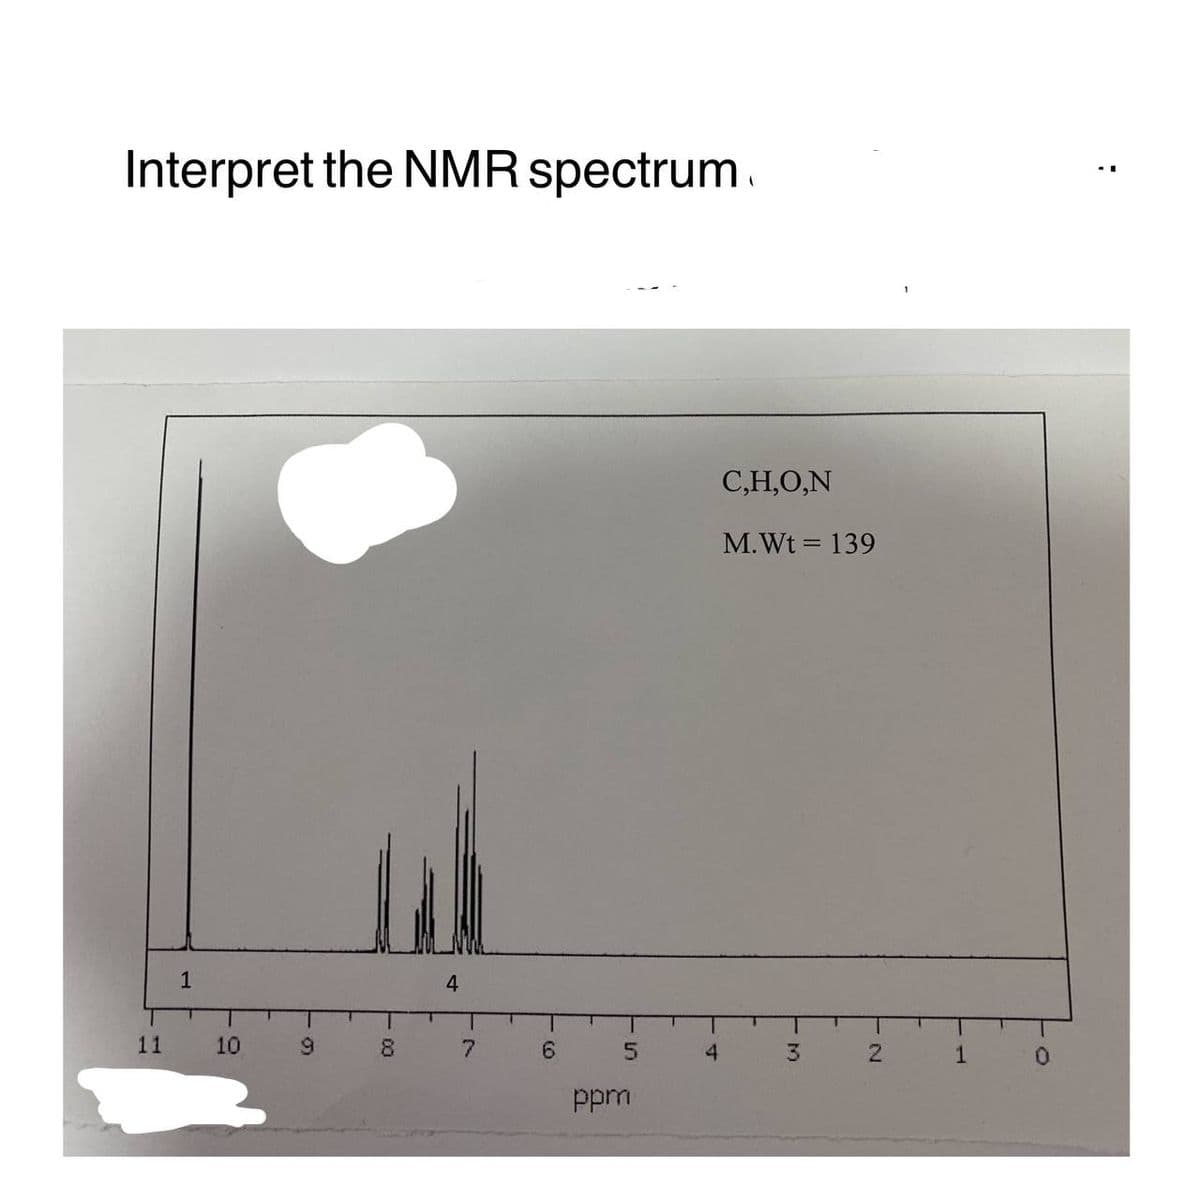 Interpret the NMR spectrum
11
1
10
51
9
8
00
4
7
6
5
ppm
4
C,H,O,N
M. Wt = 139
3
N
1
0